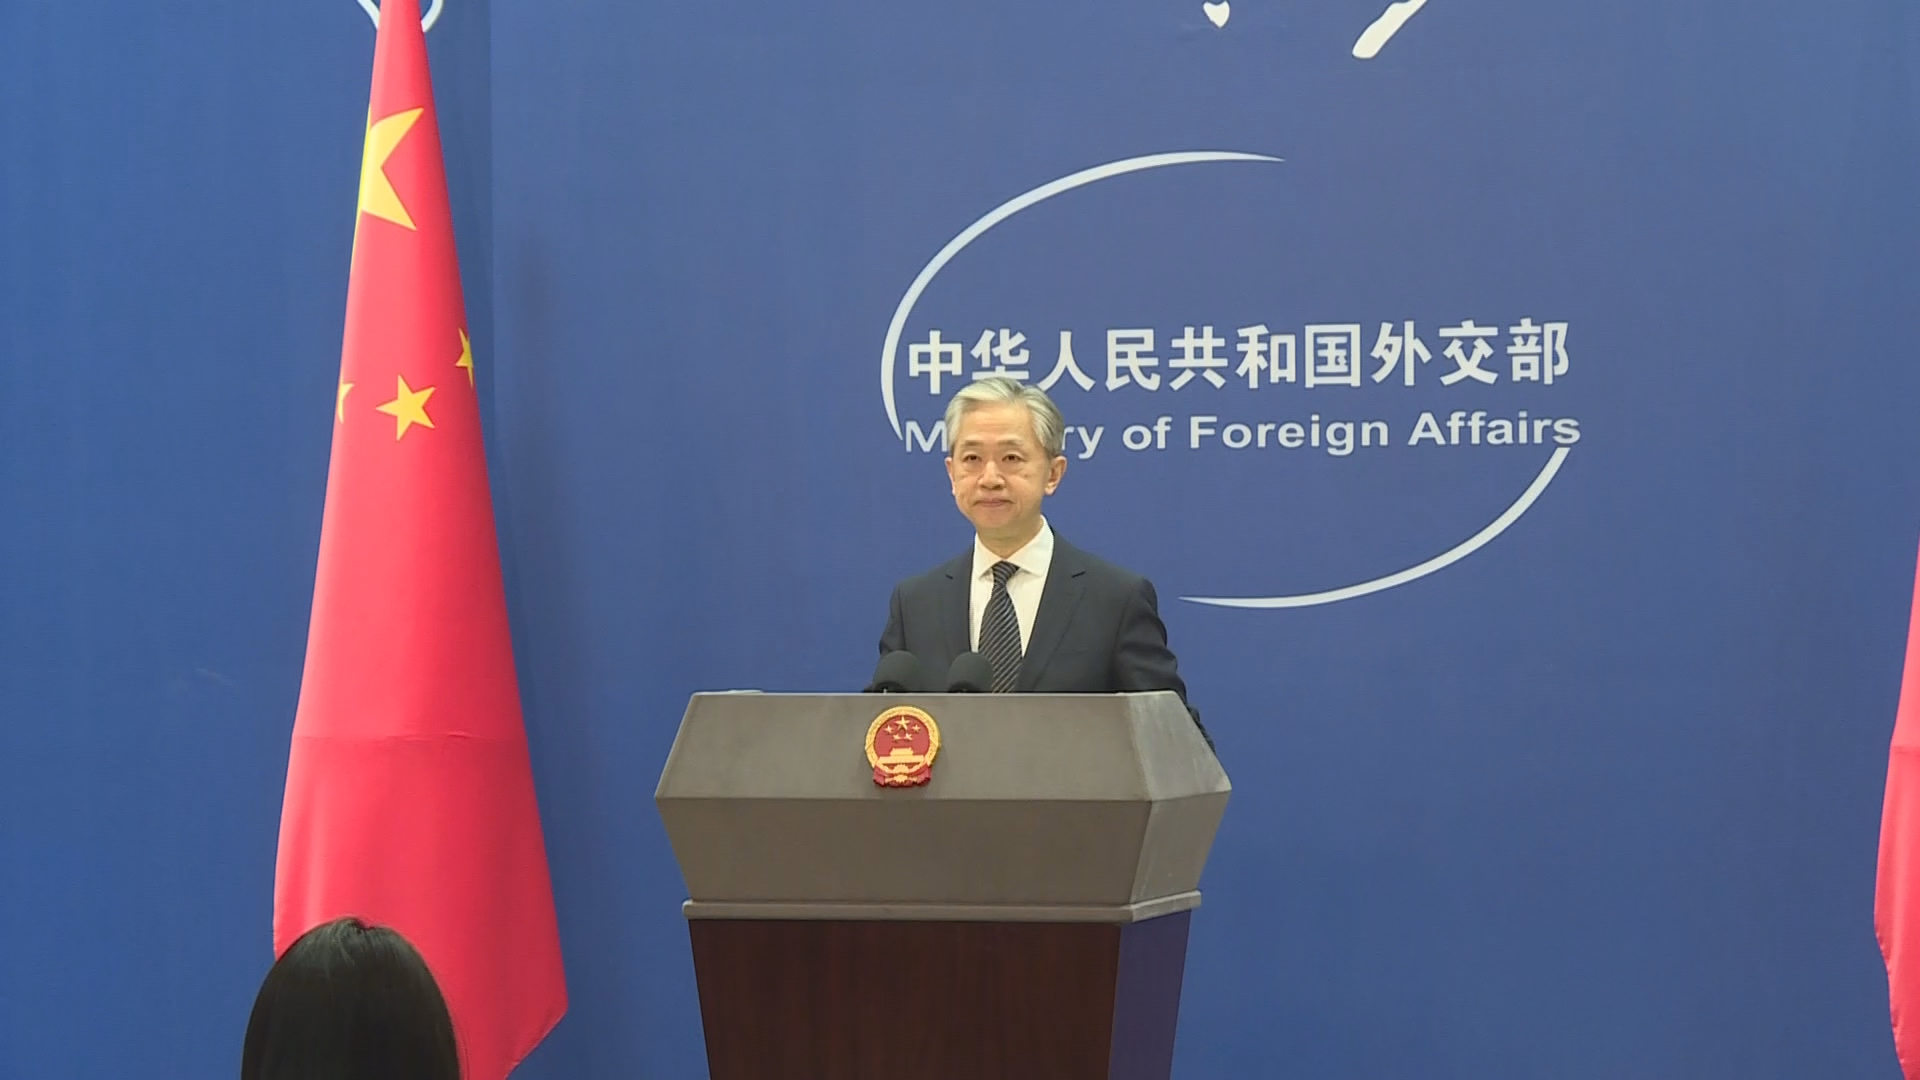 中国外交部:希望双方妥善解决分歧 确保条约顺利执行